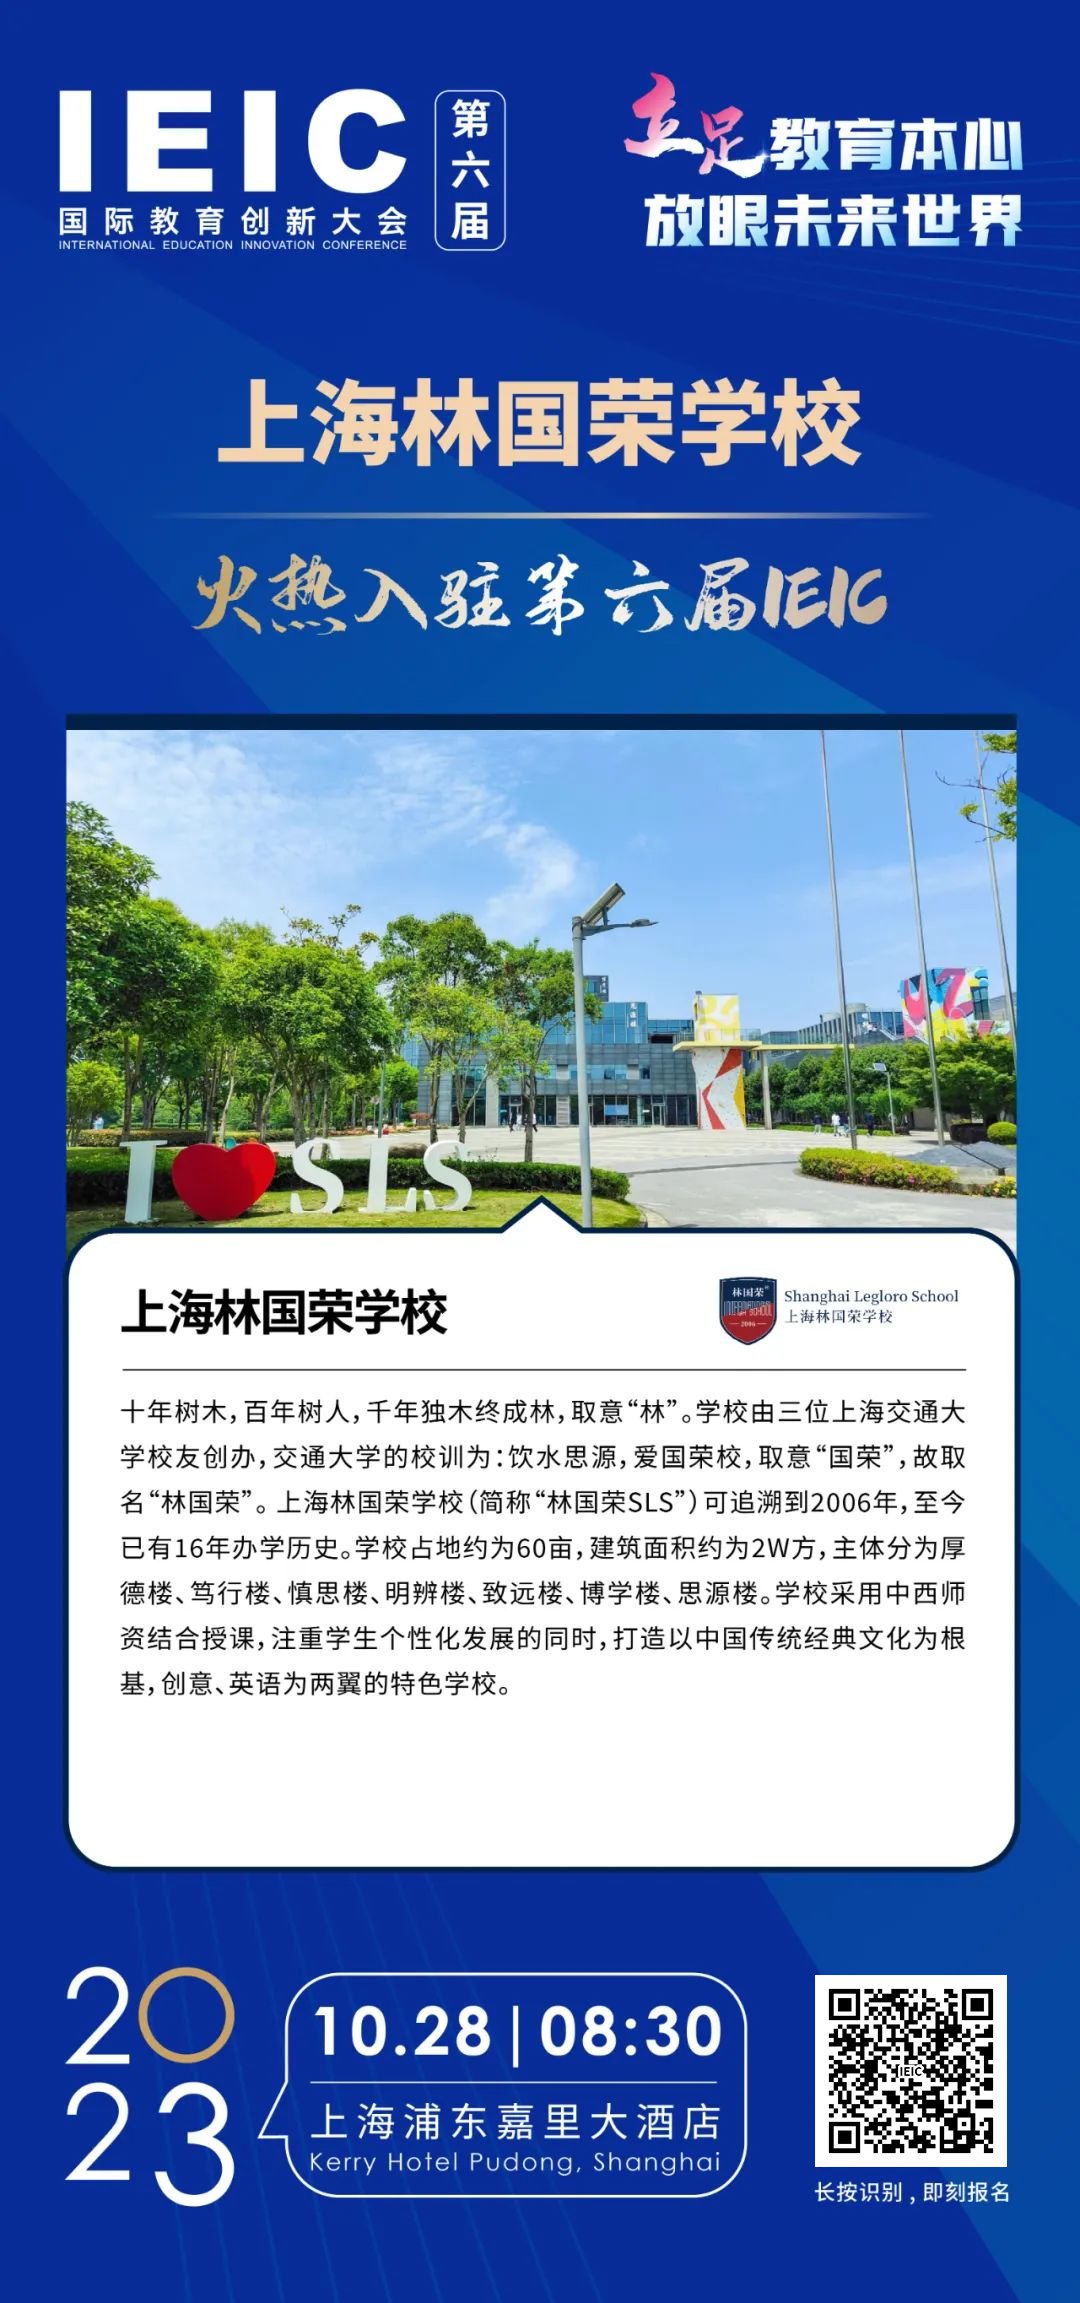 上海林国荣学校火热入驻第六届IEIC国际教育创新大会